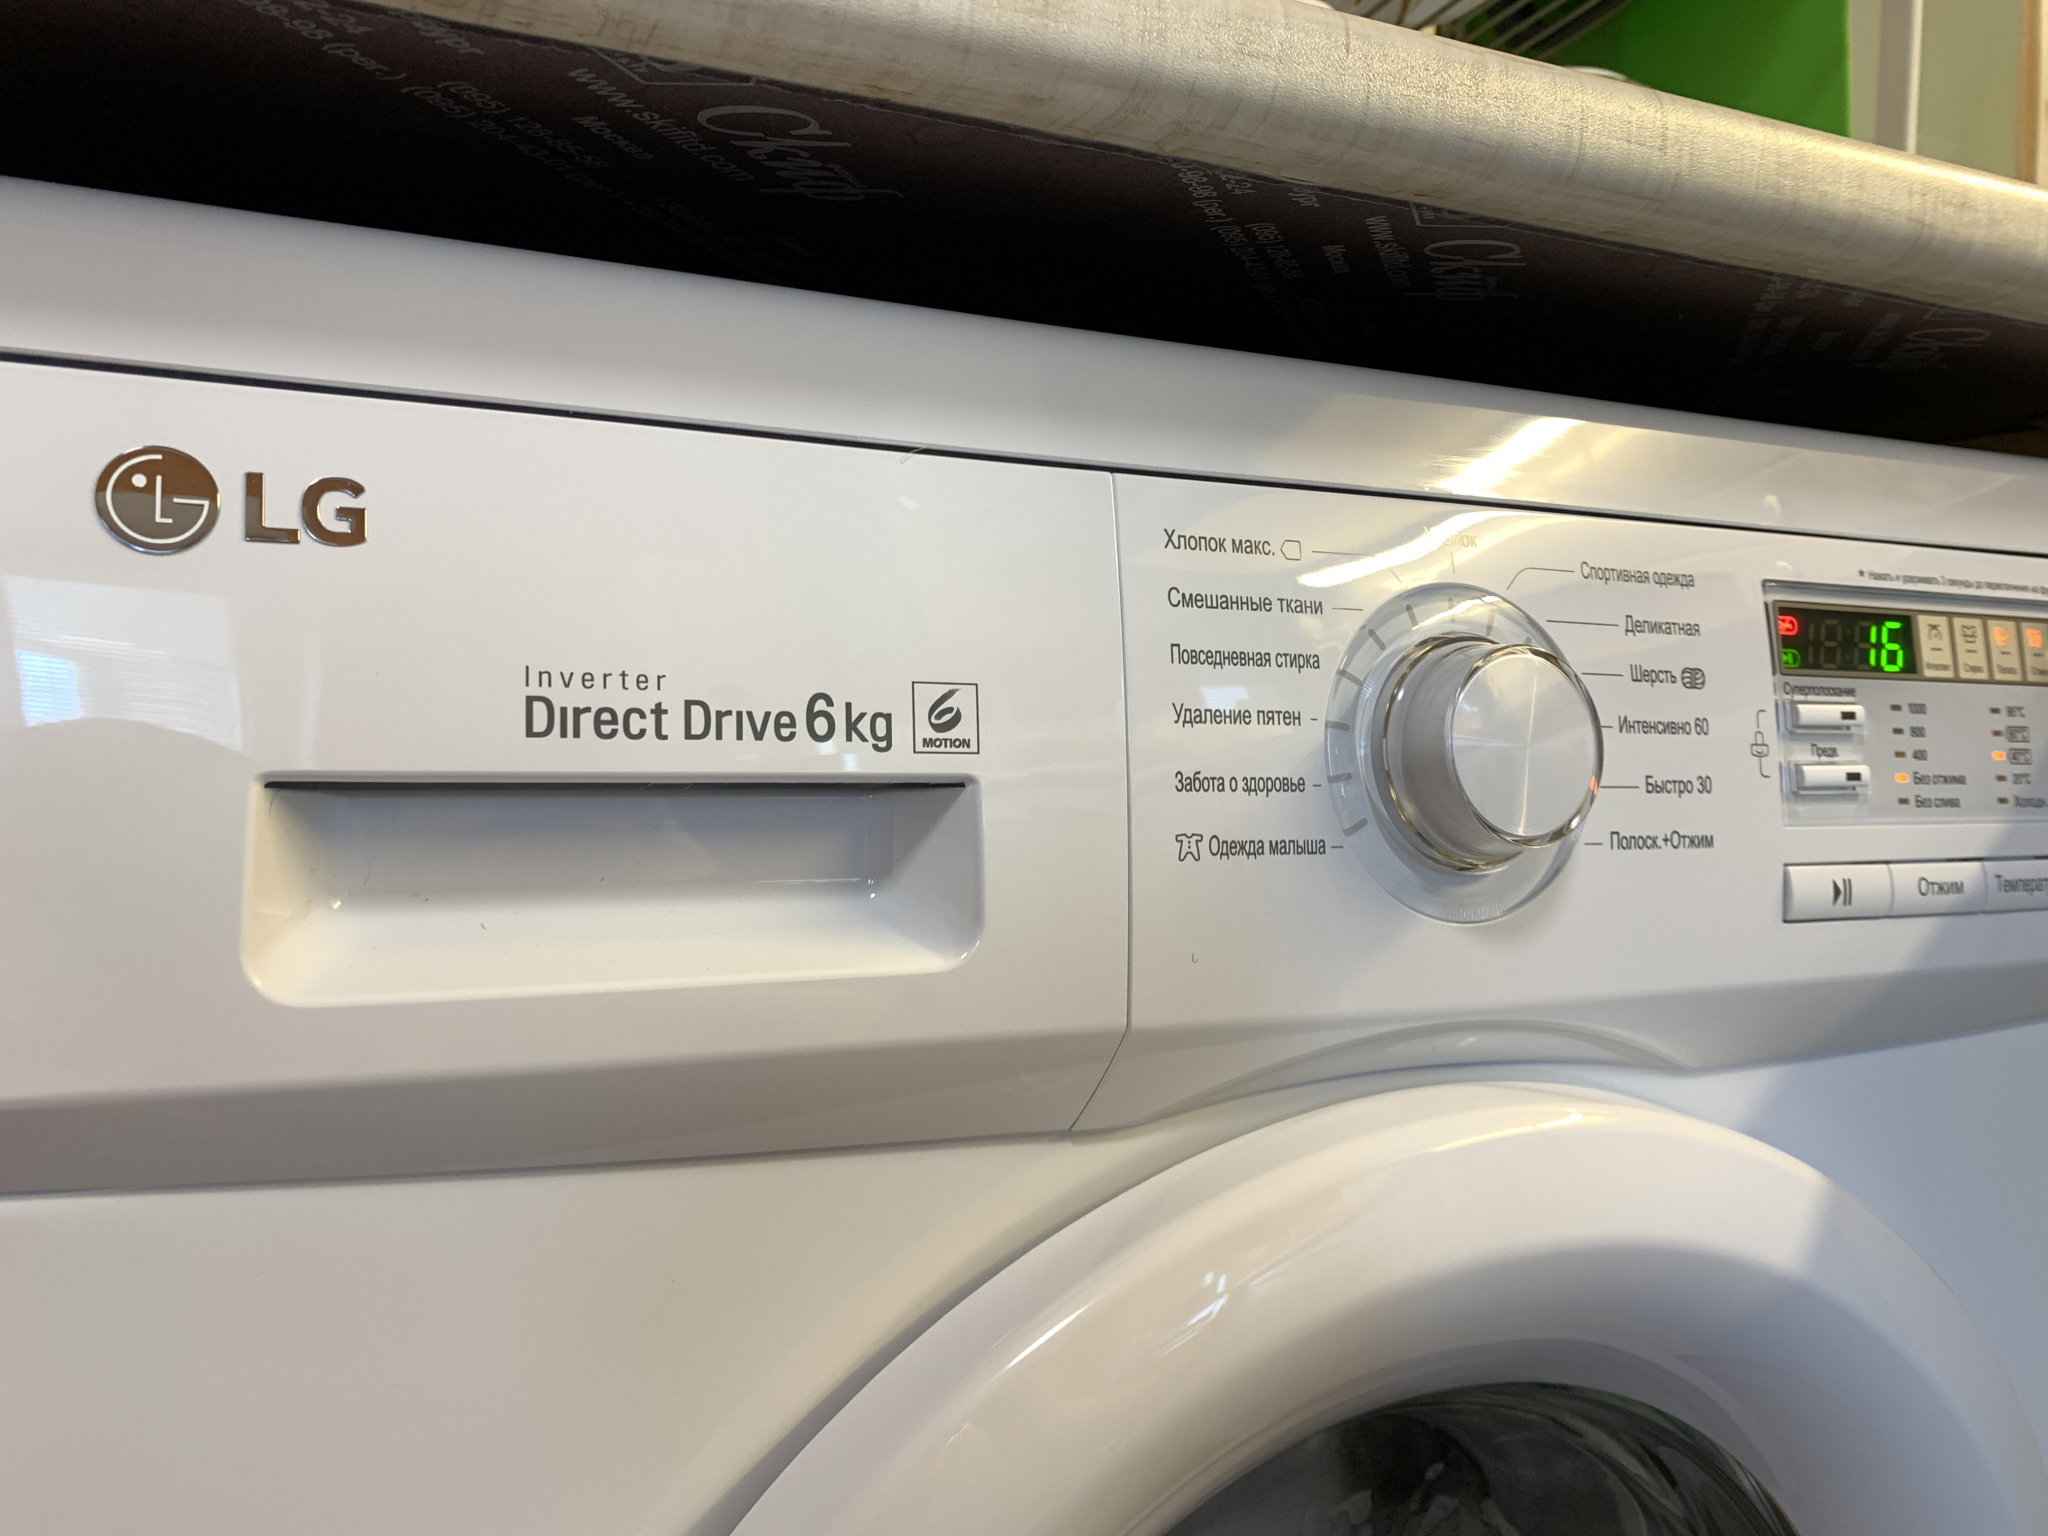 Машина lg ошибка cl. Стиральная машина LG f10b8nd. UE на стиральной машине LG. Стиральная машина LG ошибка UE. Стиральная машинка LG direct Drive 6kg ошибка UE.